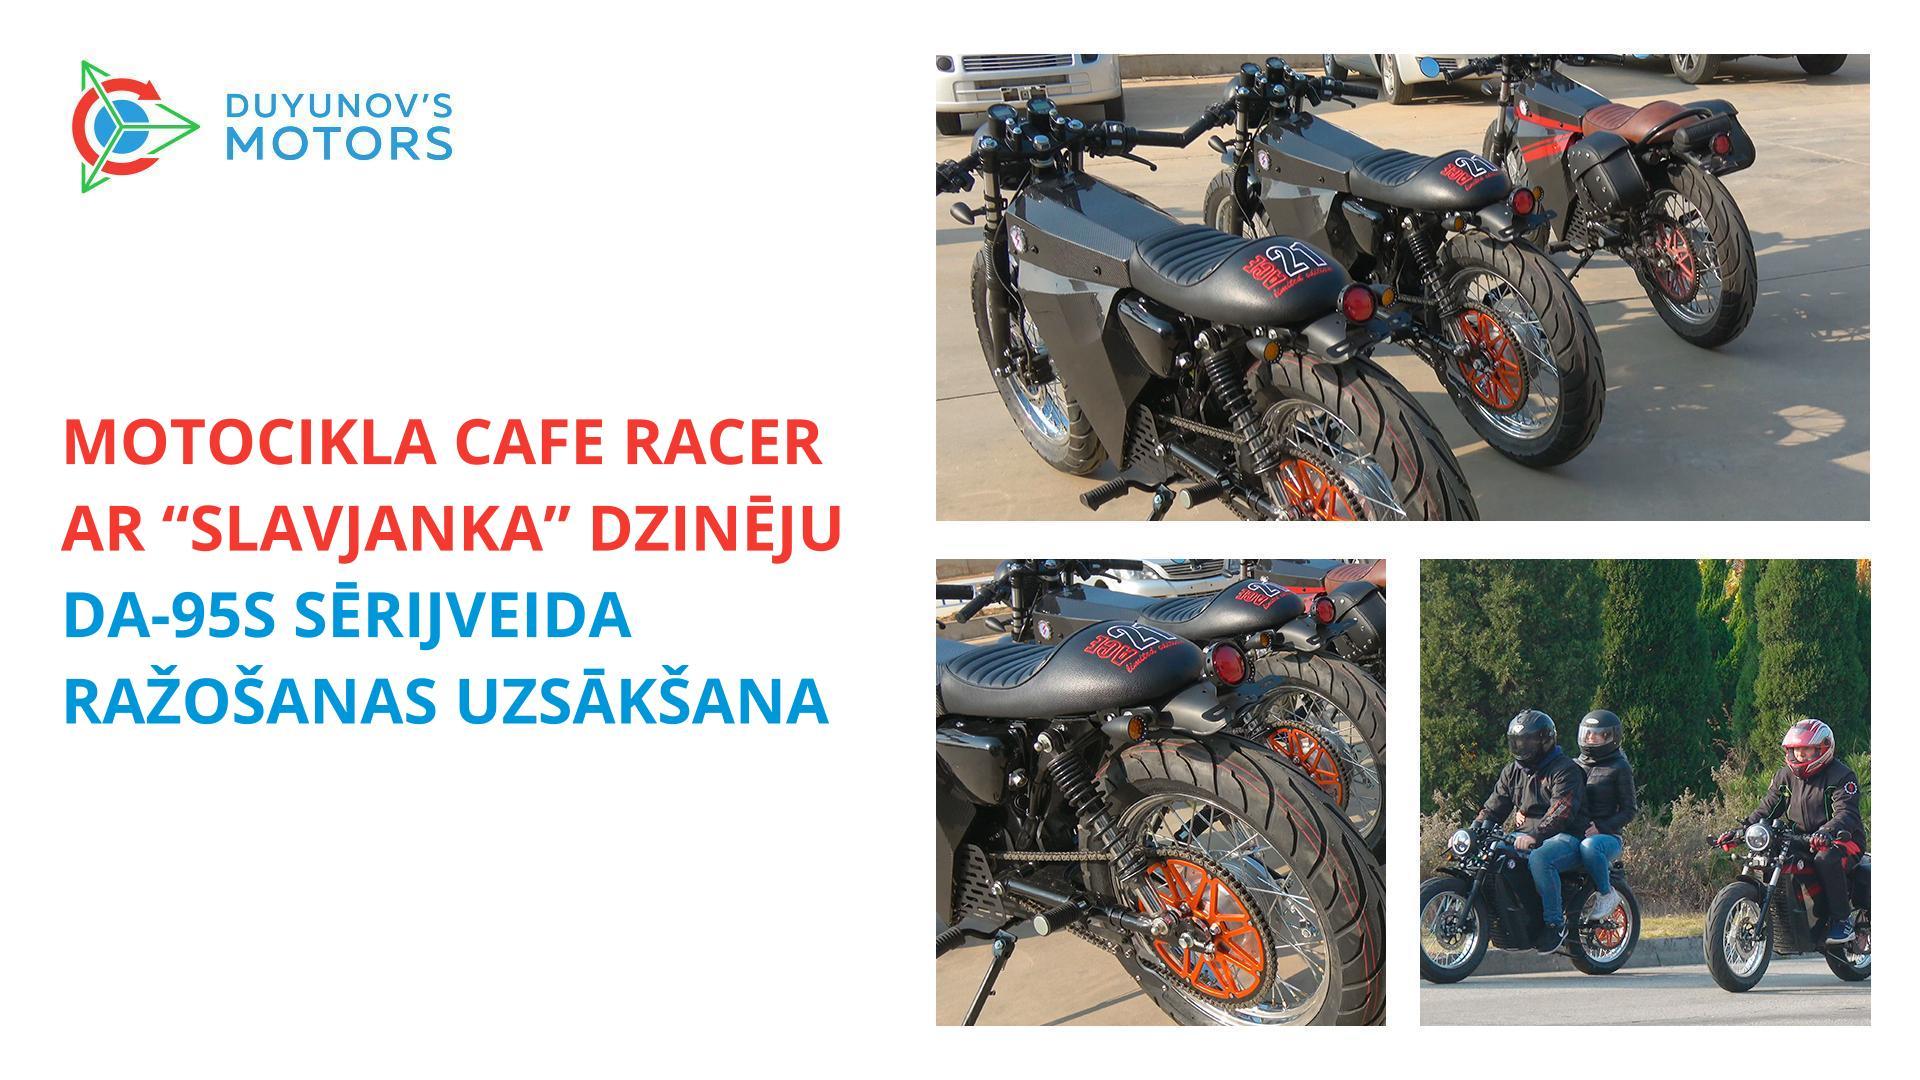 Motocikla Cafe Racer ar “Slavjanka” dzinēju DA-95S sērijveida ražošanas uzsākšana